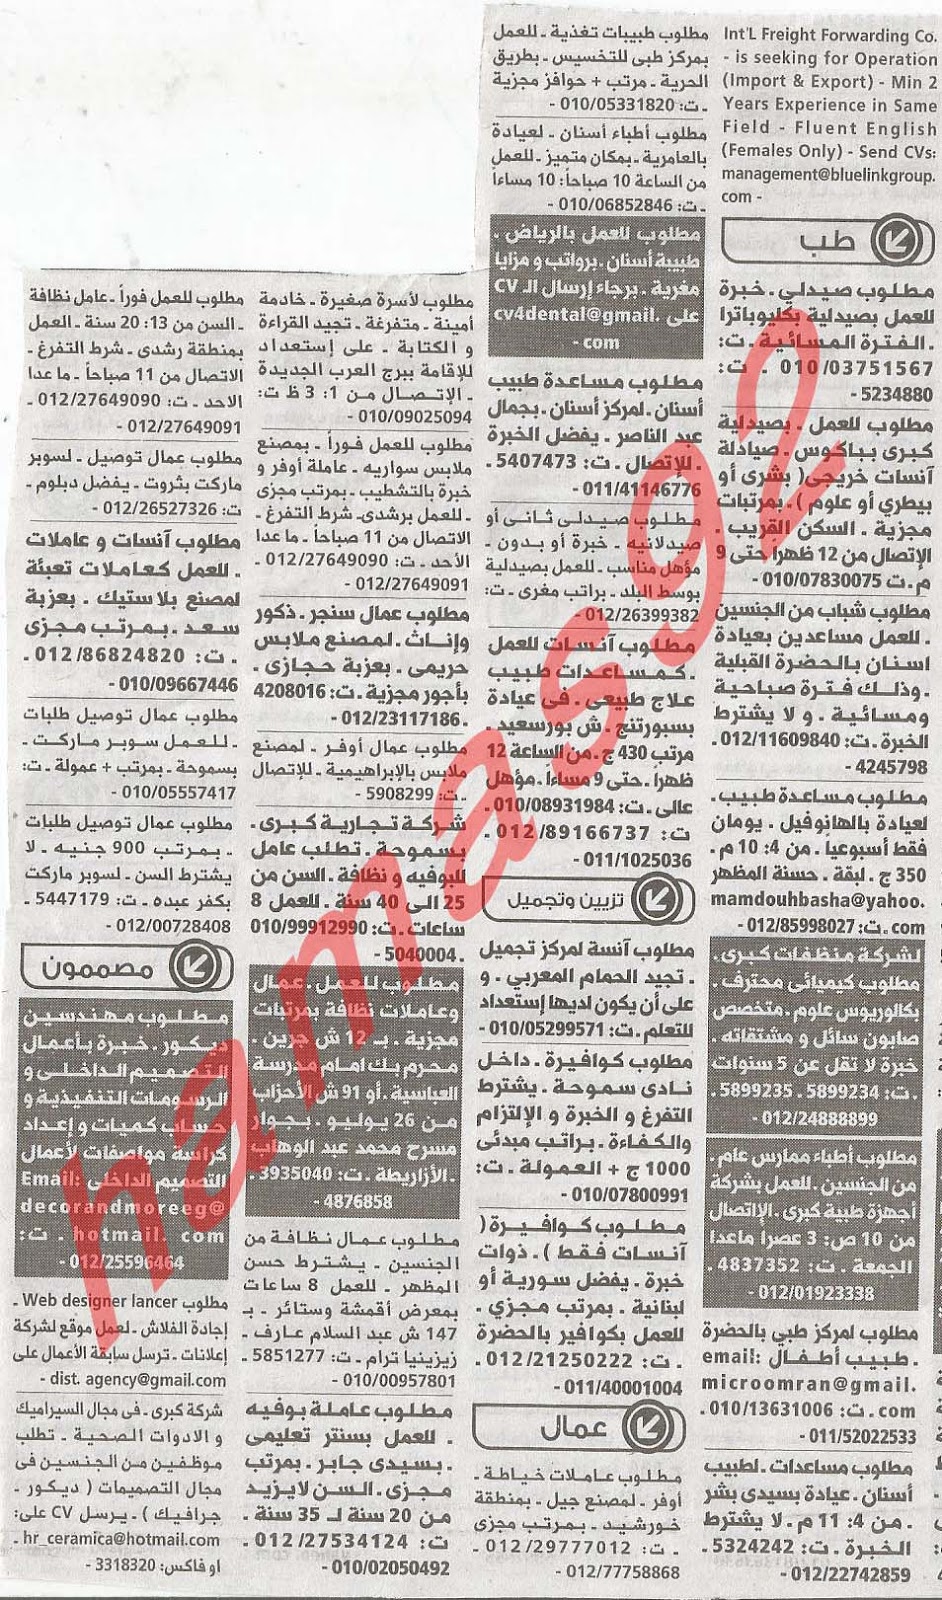 وظائف شاغرة من جريدة الوسيط الاسكندرية - مصر الاثنين 18/2/2013 %D9%88+%D8%B3+%D8%B3+2